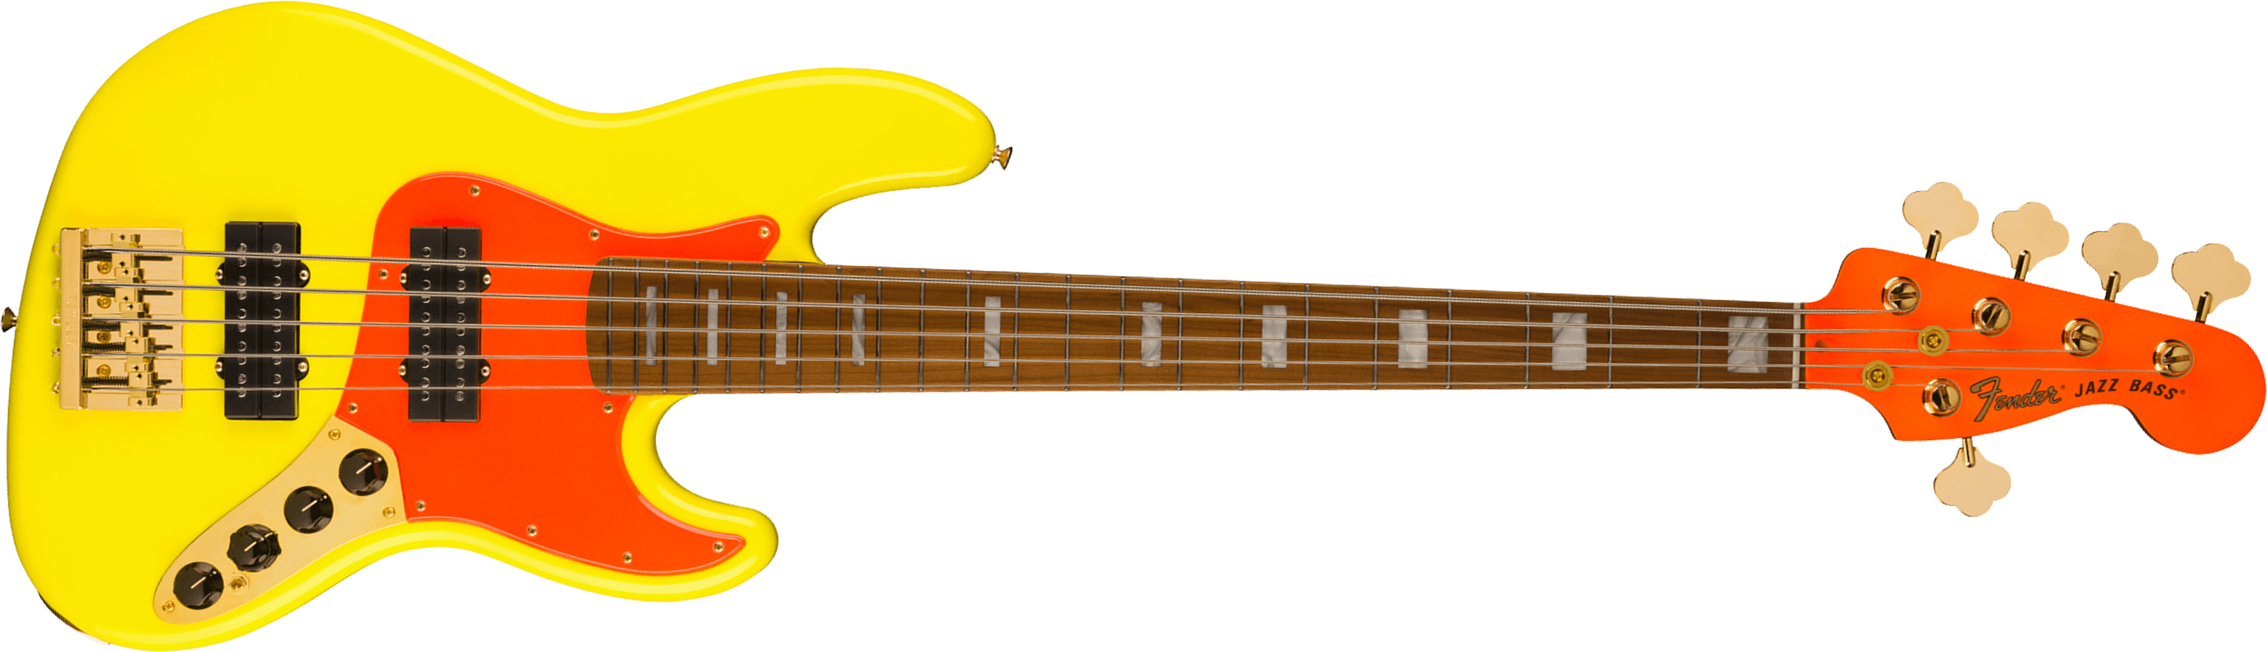 Fender Jazz Bass Mononeon V Mex Signature 5c Active Mn - Neon Yellow - Bajo eléctrico de cuerpo sólido - Main picture